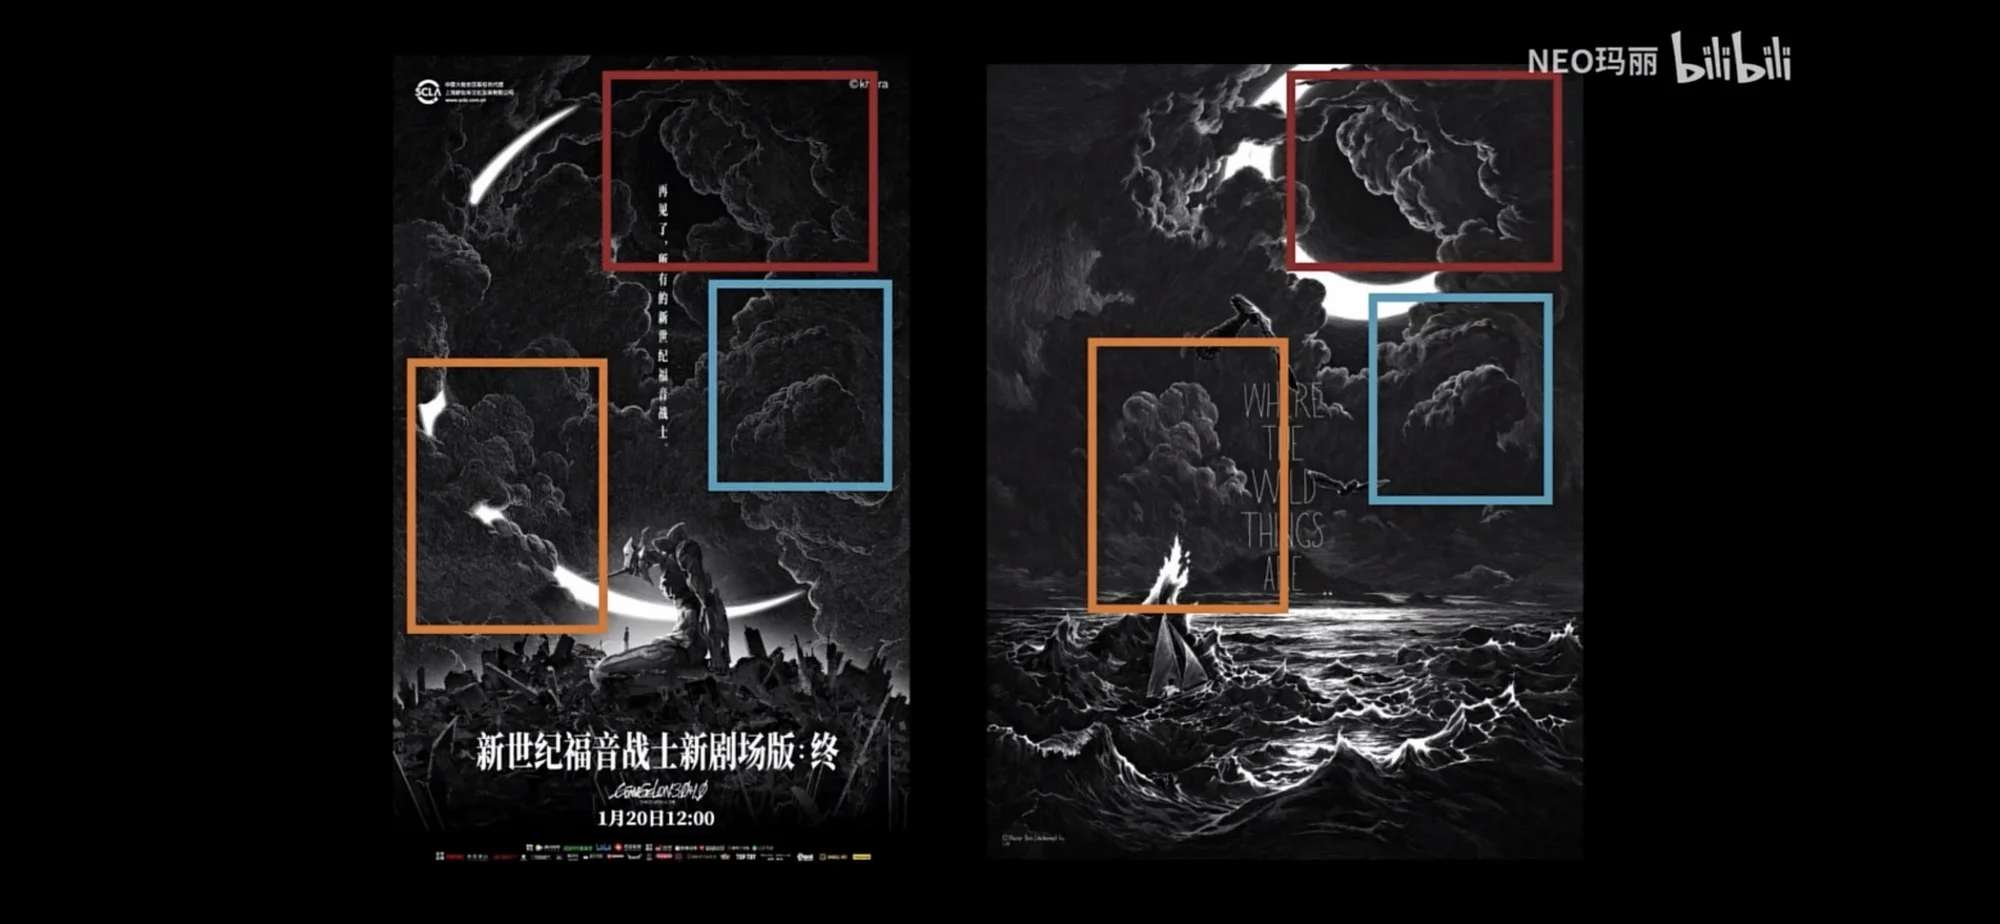 Авторов китайского постера «Евангелиона» обвинили в плагиате работы художника - фото 1